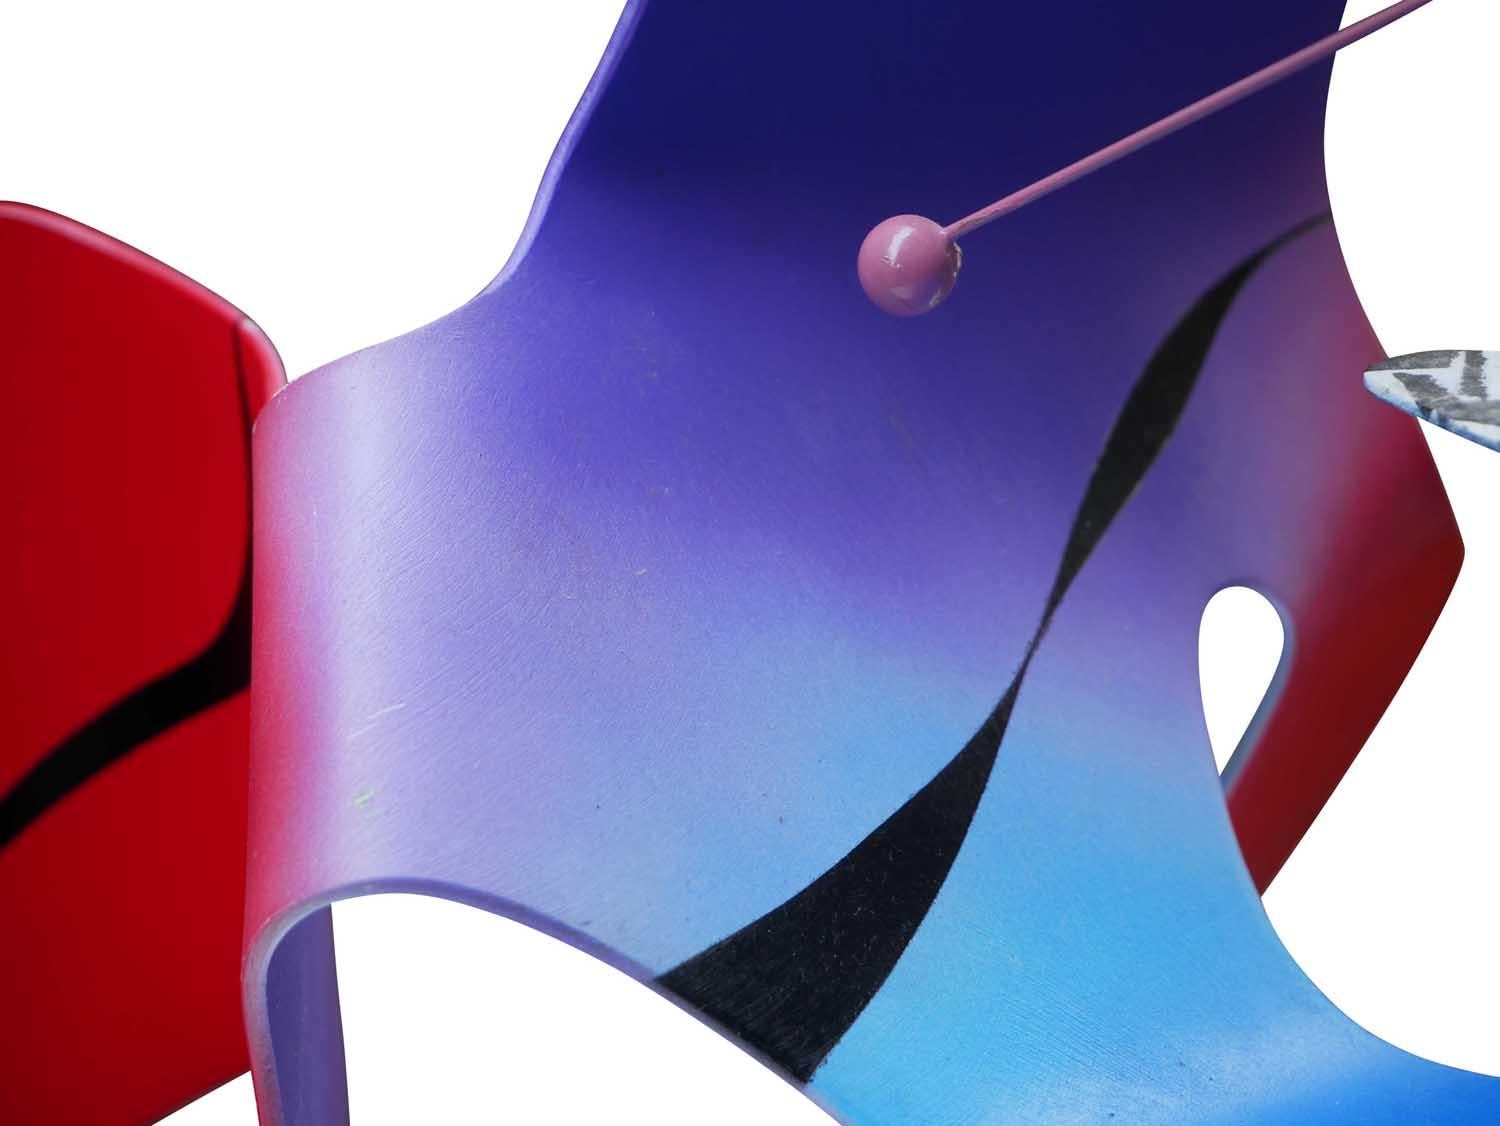 Rote, violette und blaue modernistische biomorphe mobile Skulptur von Jon Jon Krawczyk. Signiert vom Künstler am unteren Rand des Werks. 

Biografie des Künstlers: Krawczyk ist Absolventin des Connecticut College und hat in ganz Europa Kunst